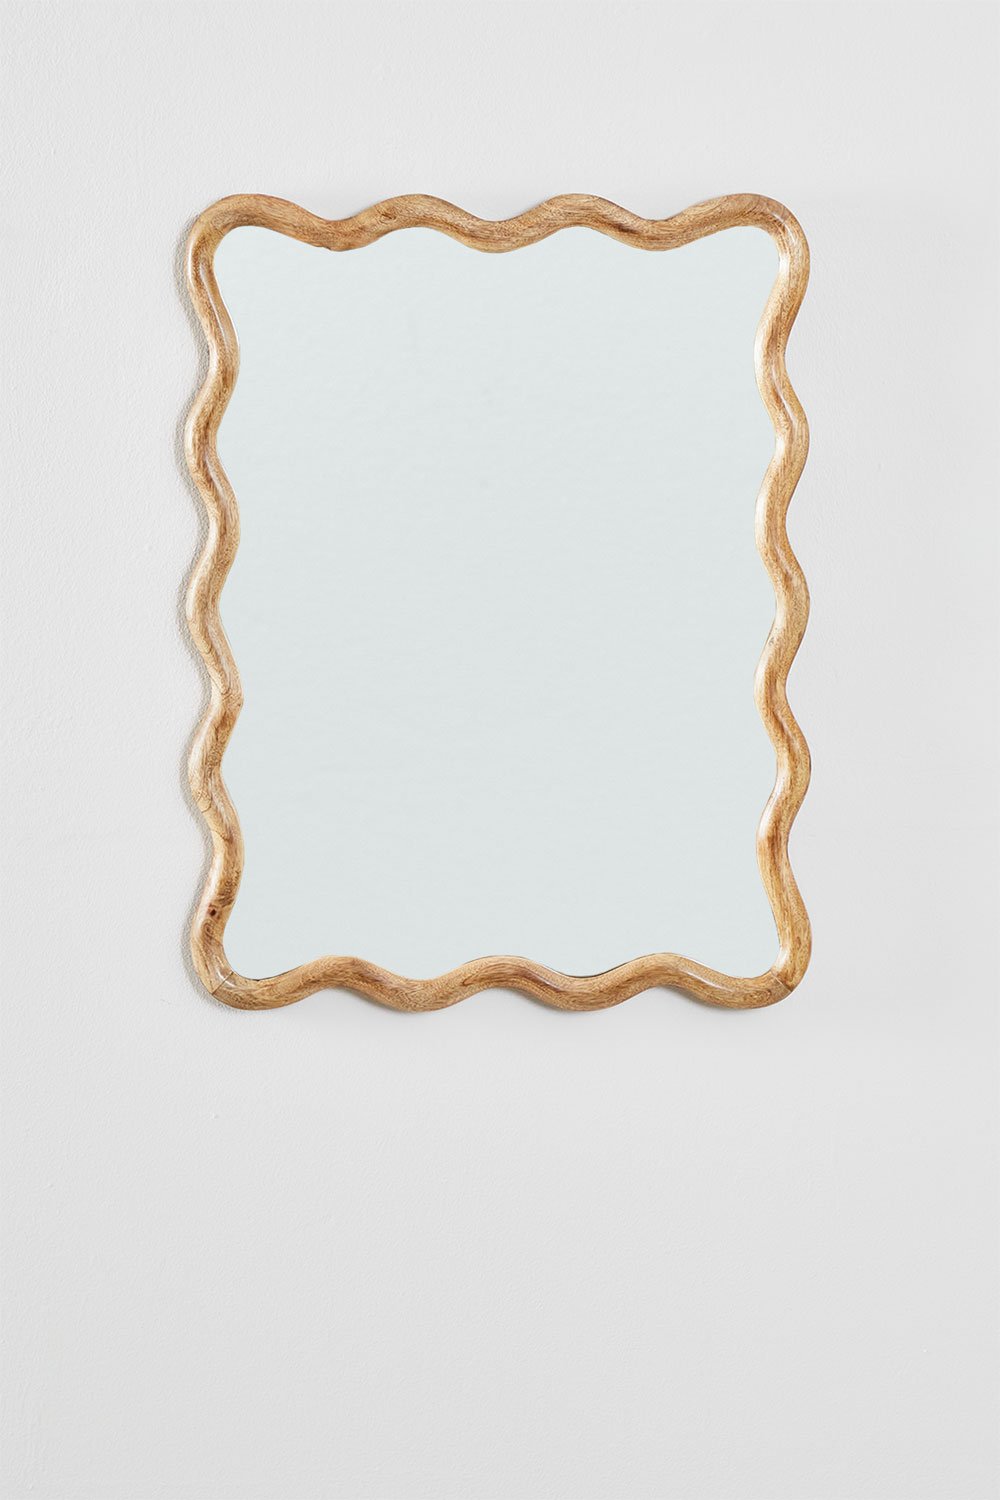 Prostokątne lustro ścienne z drewna mango (48x62 cm) Gilliam, obrazek w galerii 2